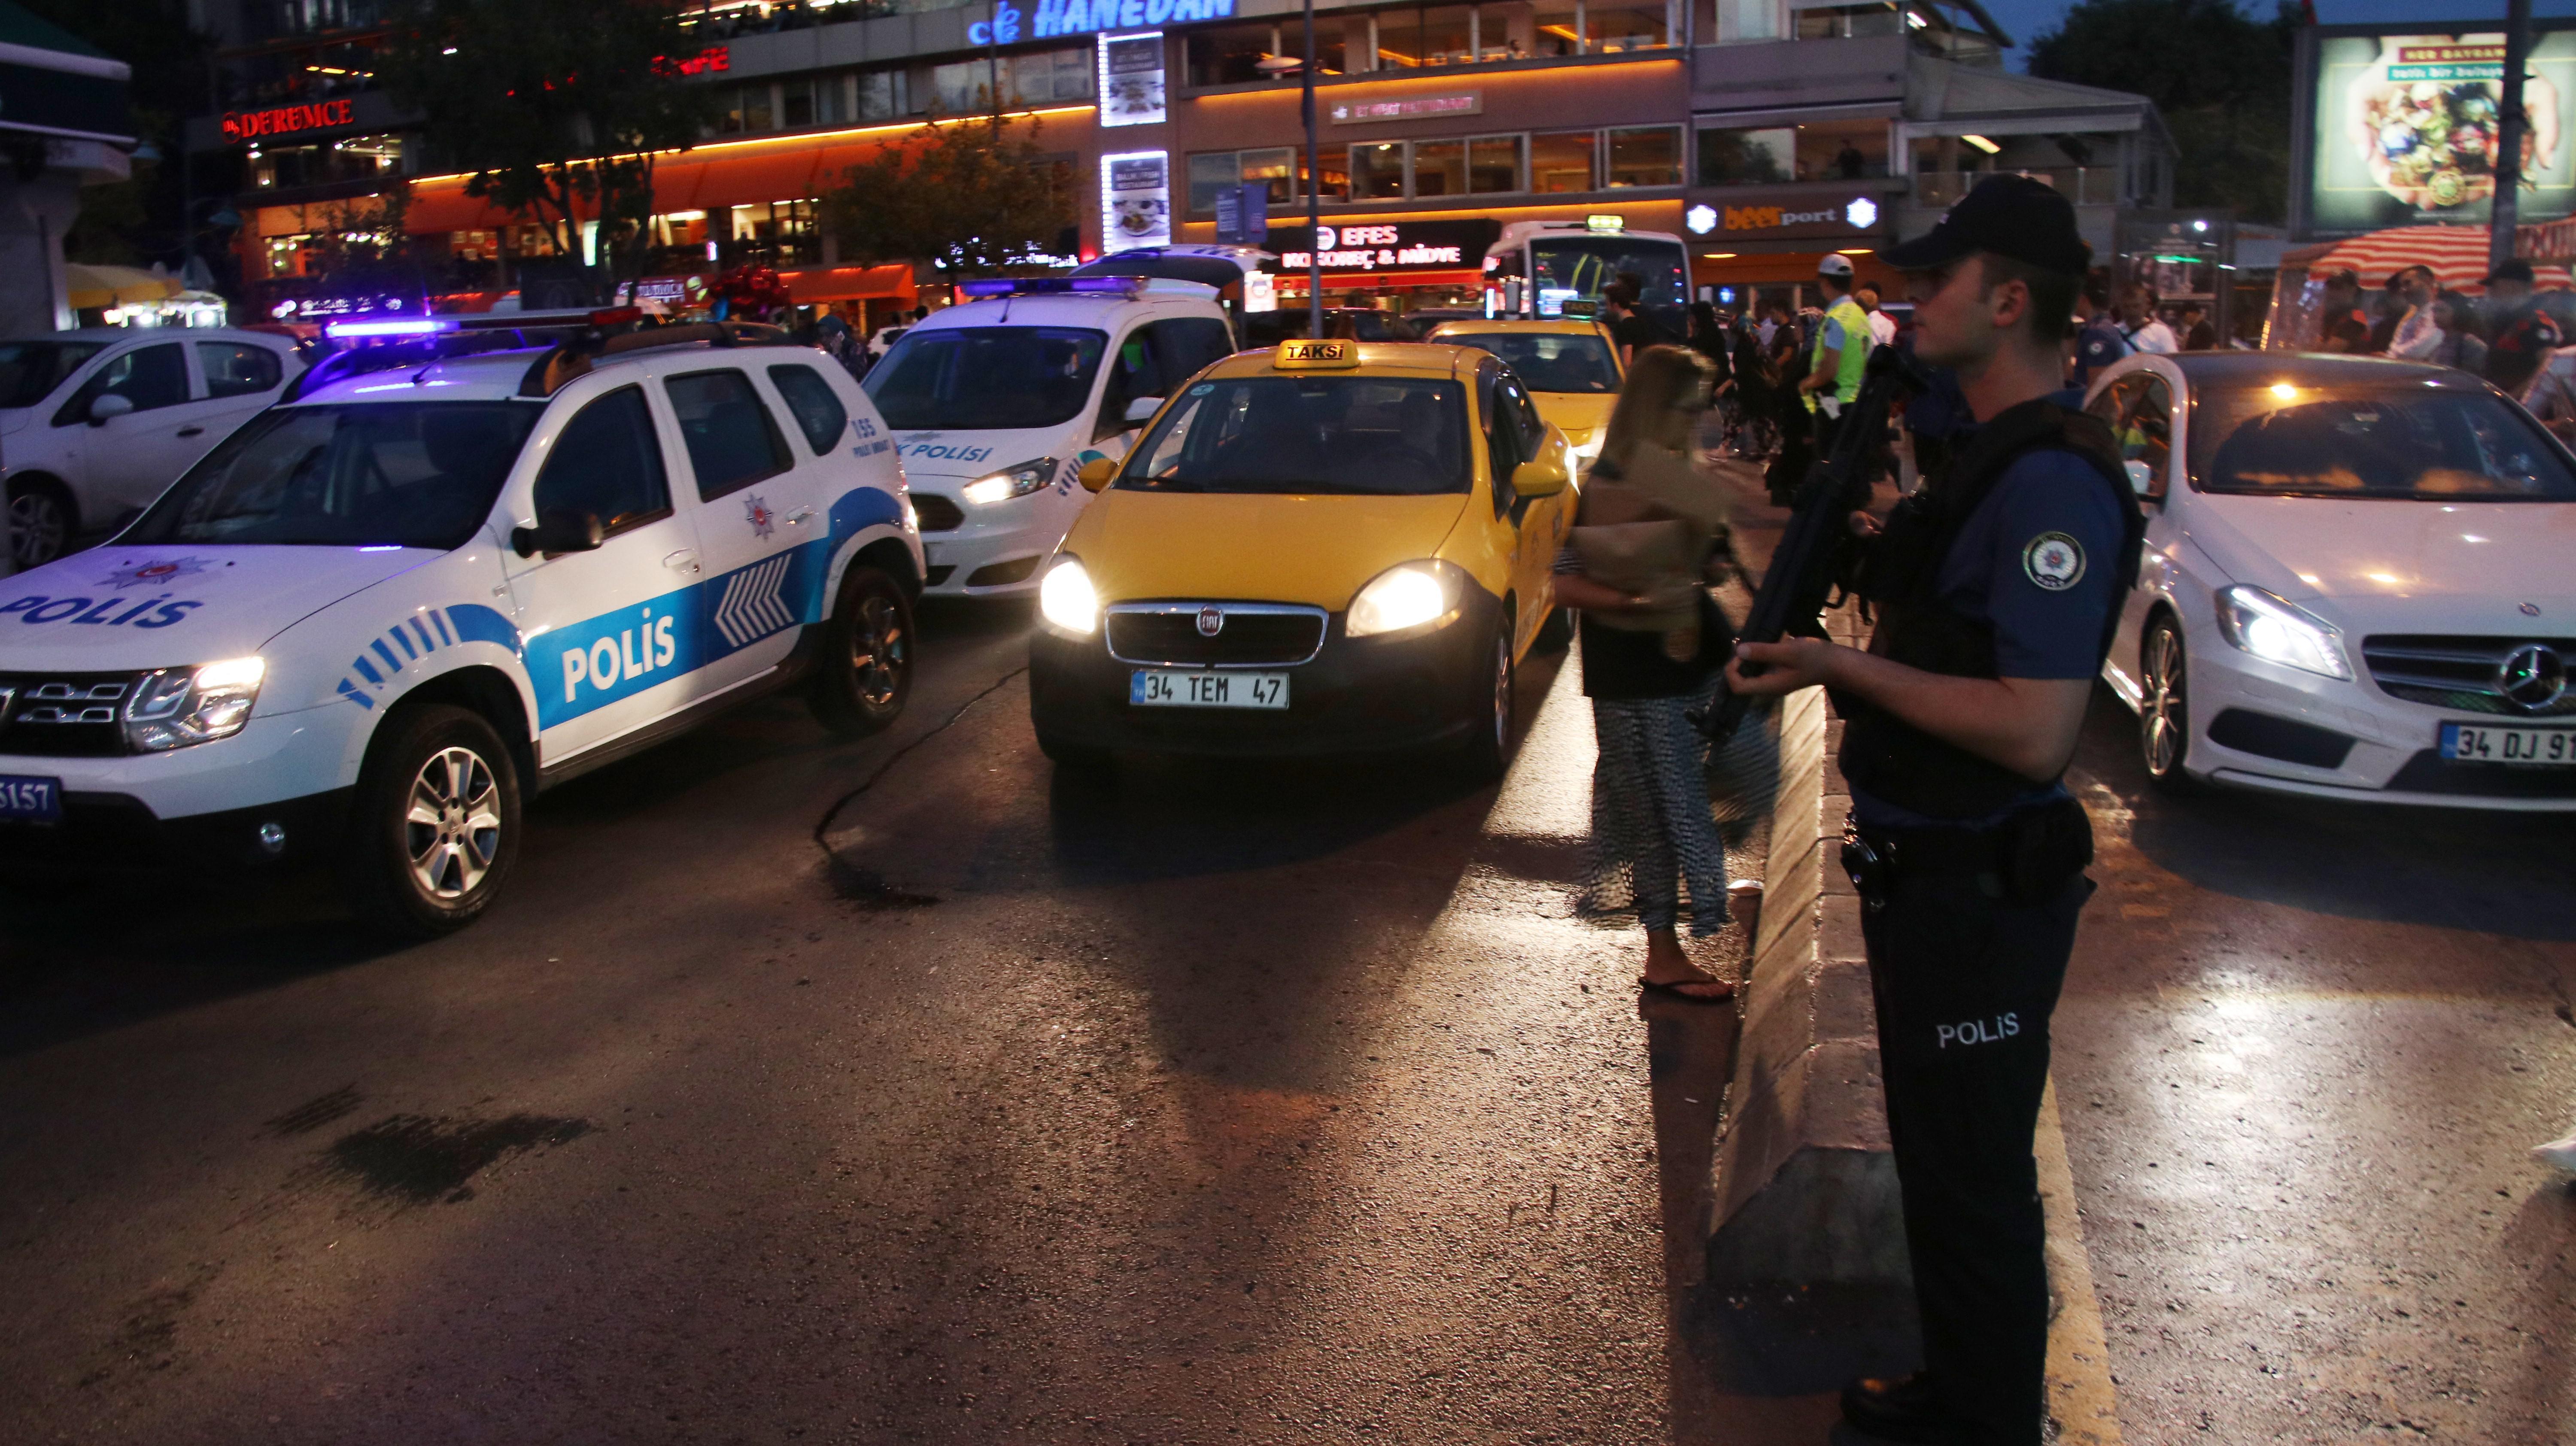 İstanbul’da 4 bin 600 polisle Yeditepe Huzur uygulaması